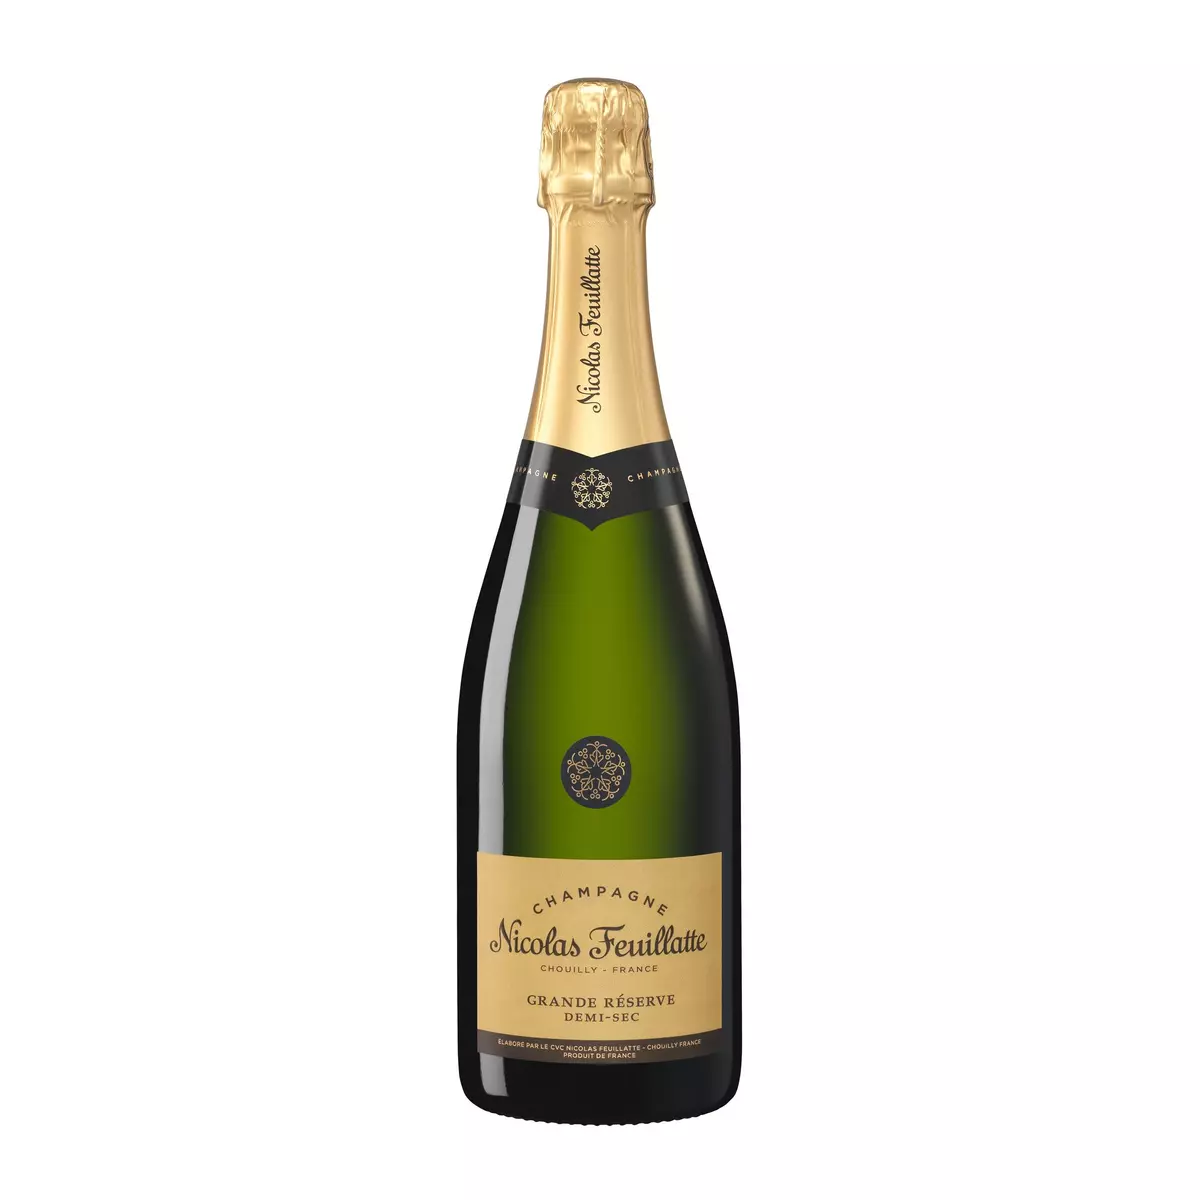 NICOLAS FEUILLATTE AOP Champagne grande réserve demi-sec 75cl